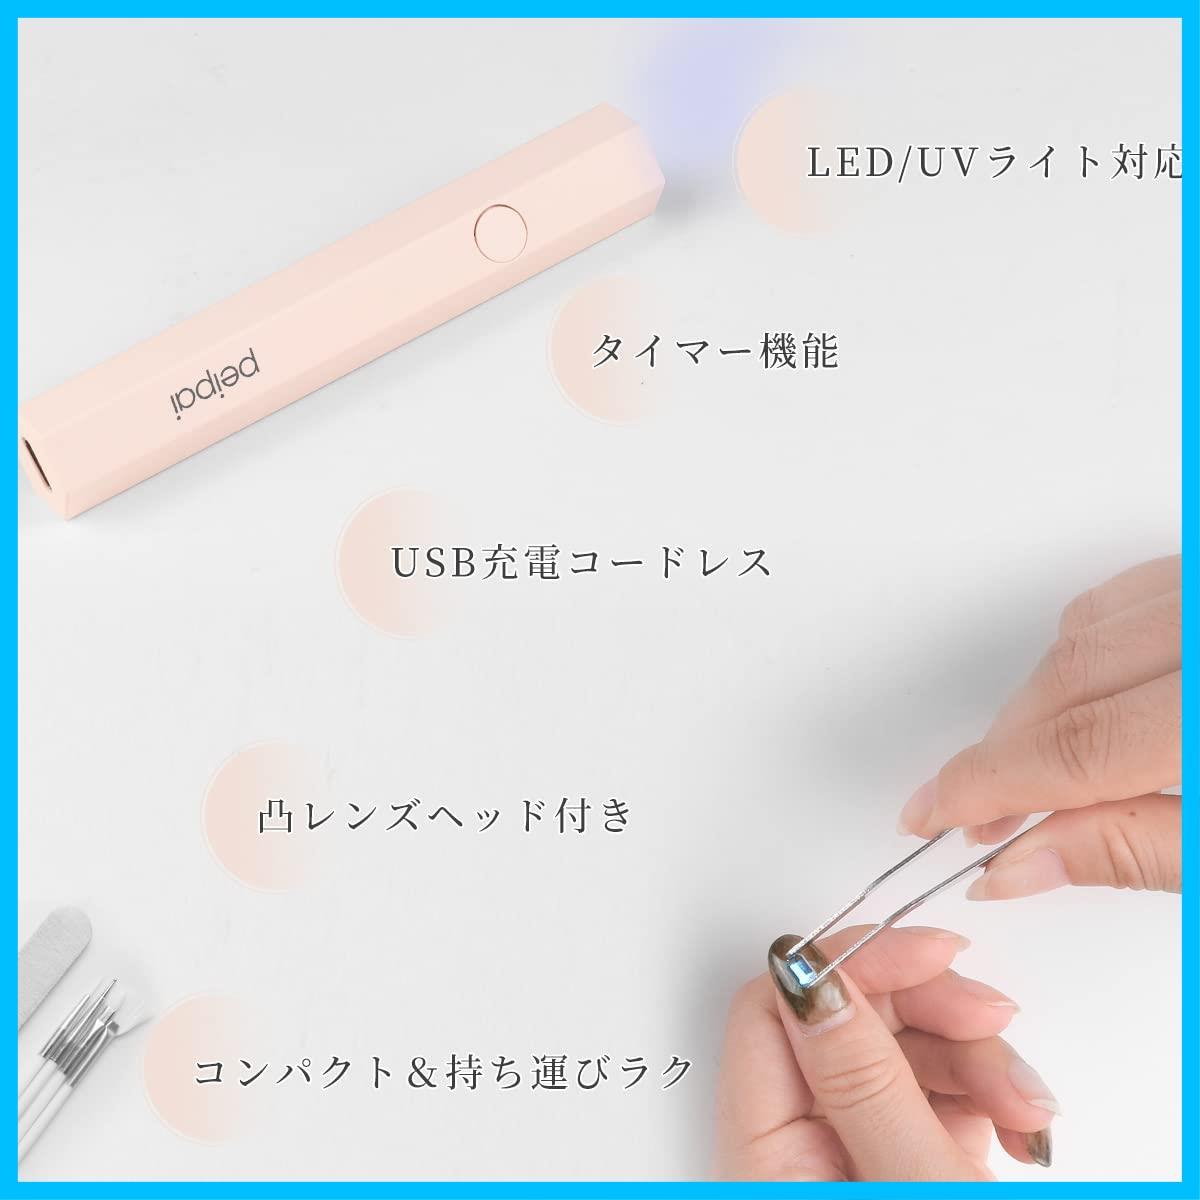 【新着商品】peipai LED & UV ネイルライト 3W ペン型 ミニジェルネイル用ライト uvライト レジン用 硬化ライト